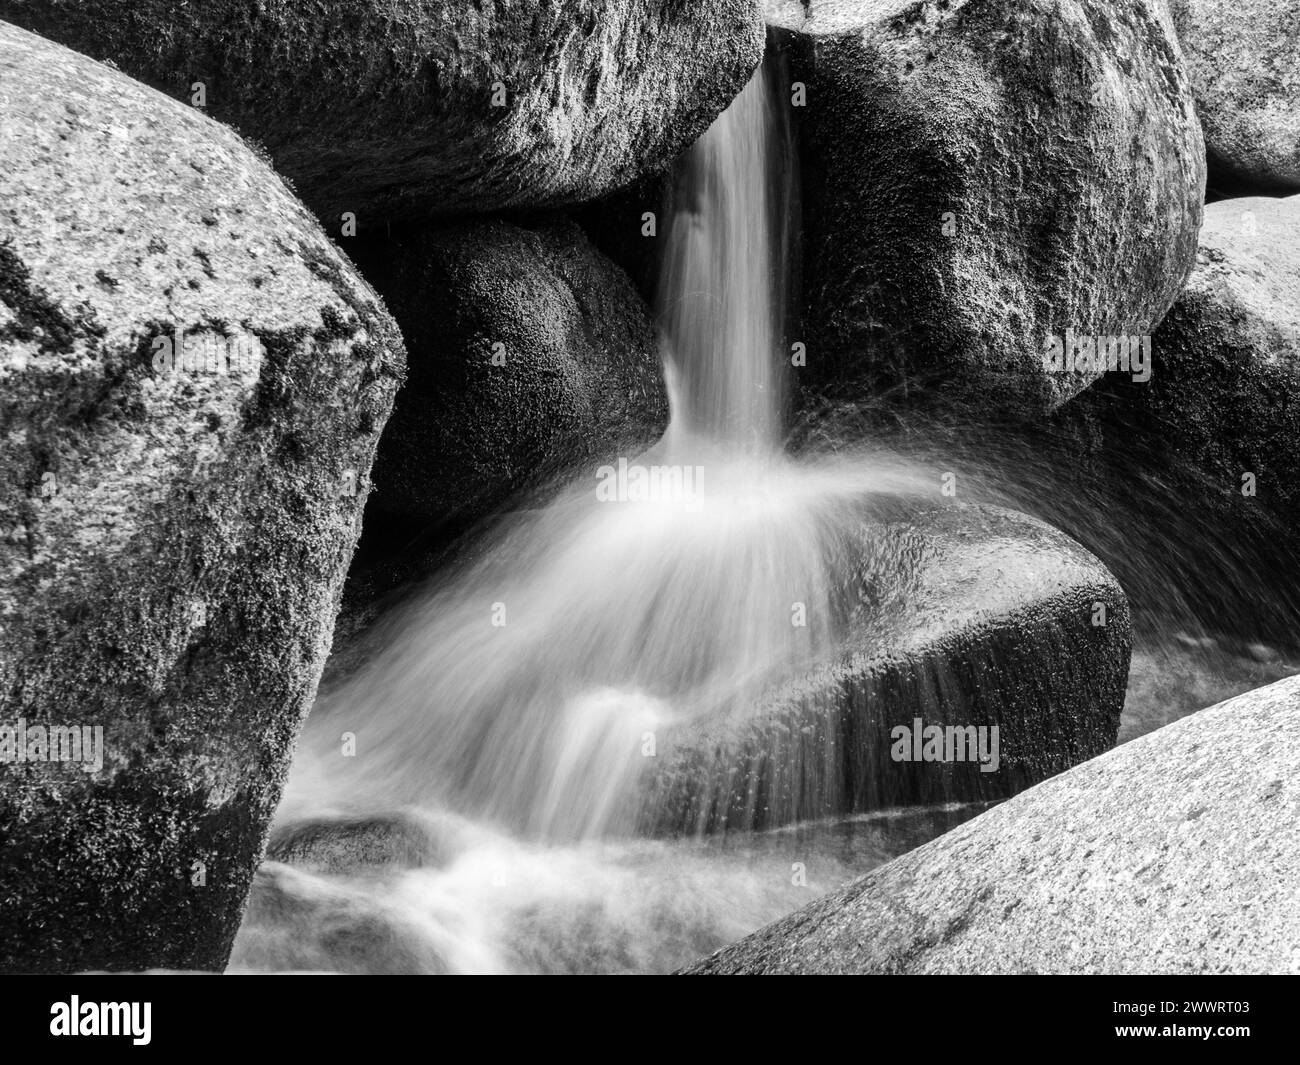 Vista dettagliata della piccola cascata di fiume su un fiume roccioso di montagna. Acqua di seta sfocata mediante scatto a lunga esposizione. Immagine in bianco e nero. Foto Stock